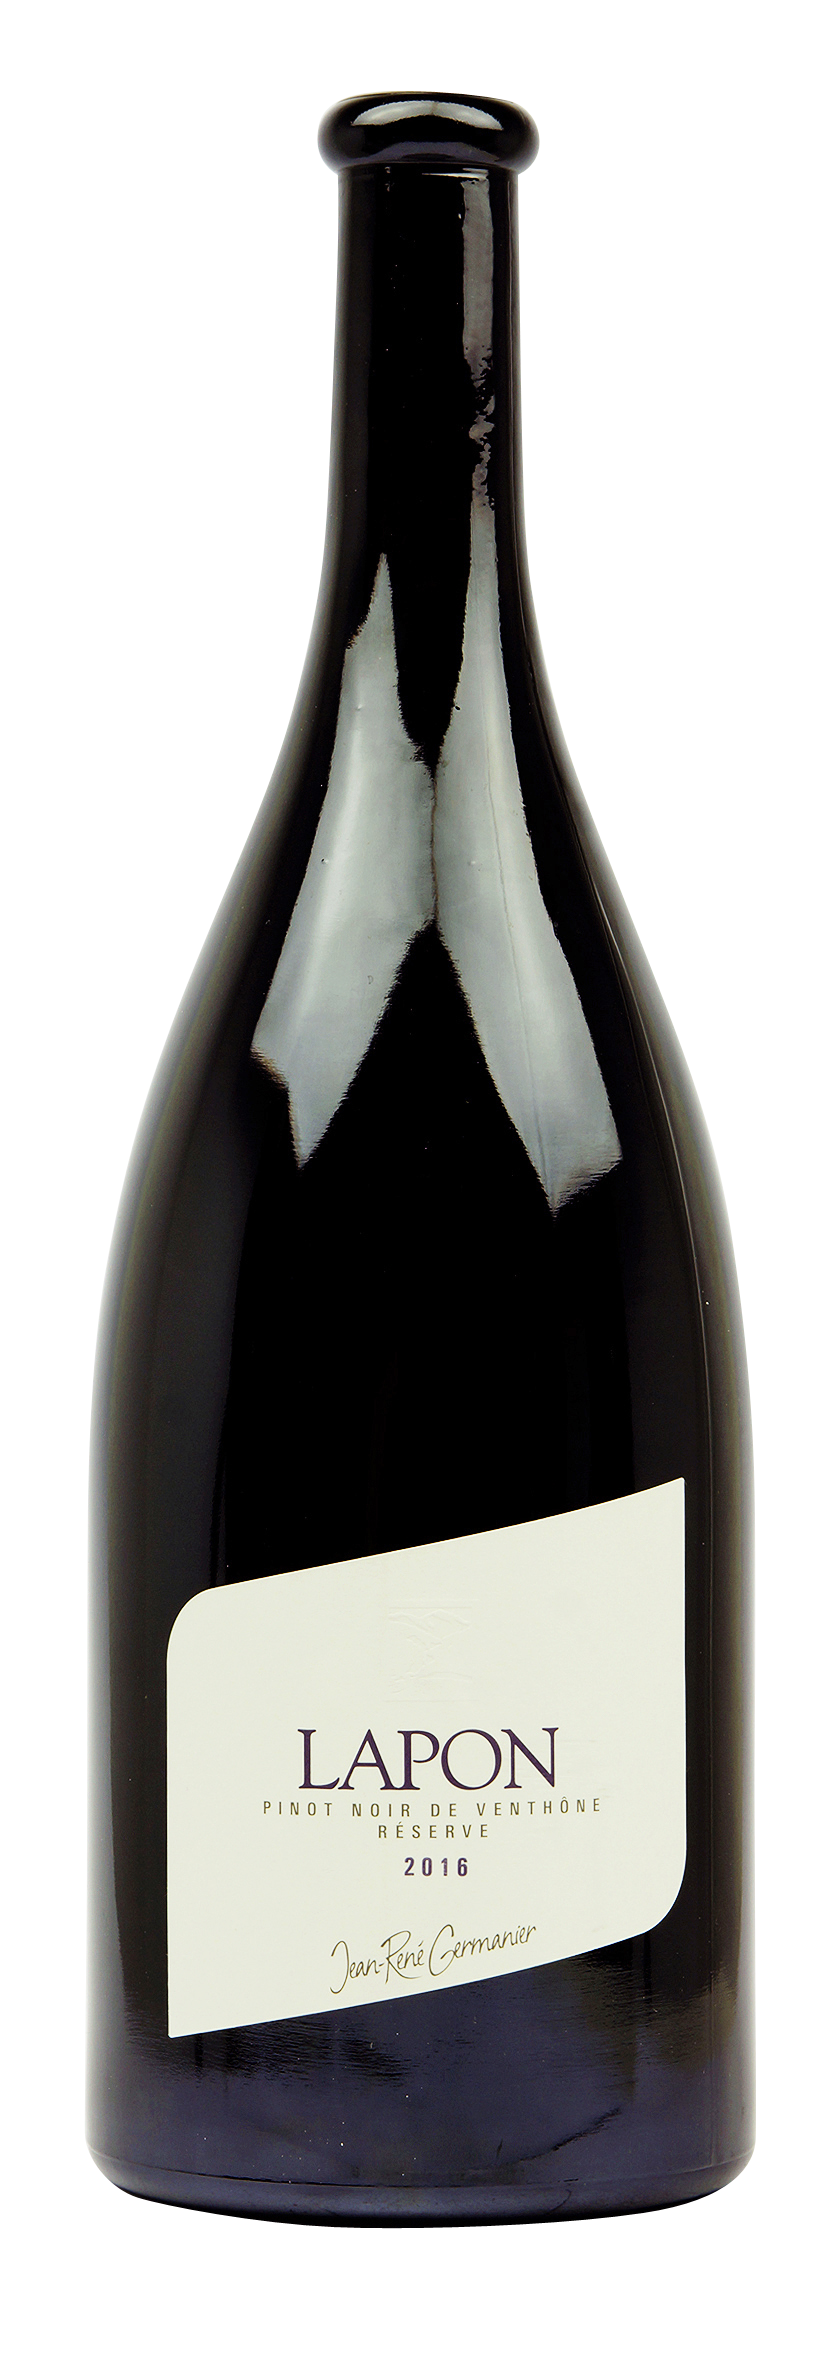 Valais AOC Pinot Noir de Venthône «Lapon» 2016